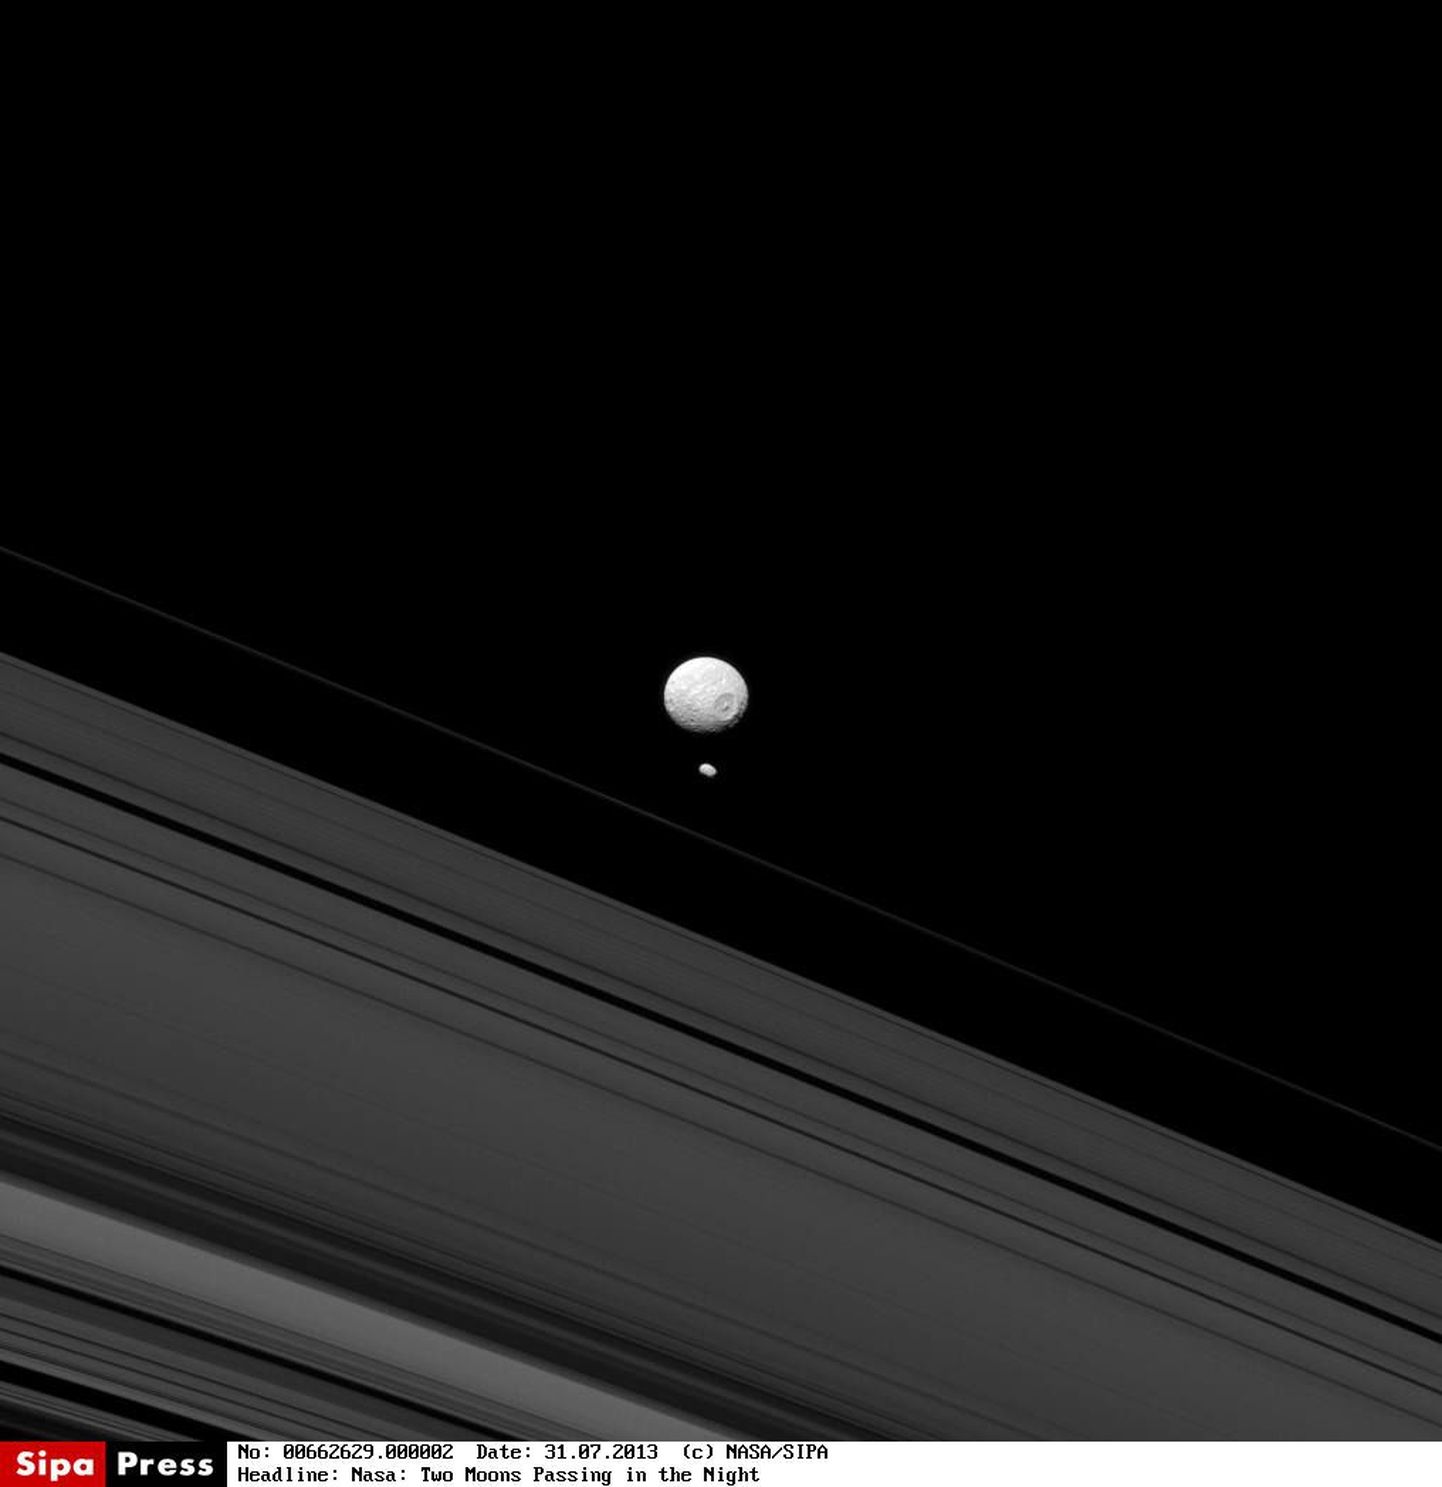 Saturni kuud Mimas ja Pandora